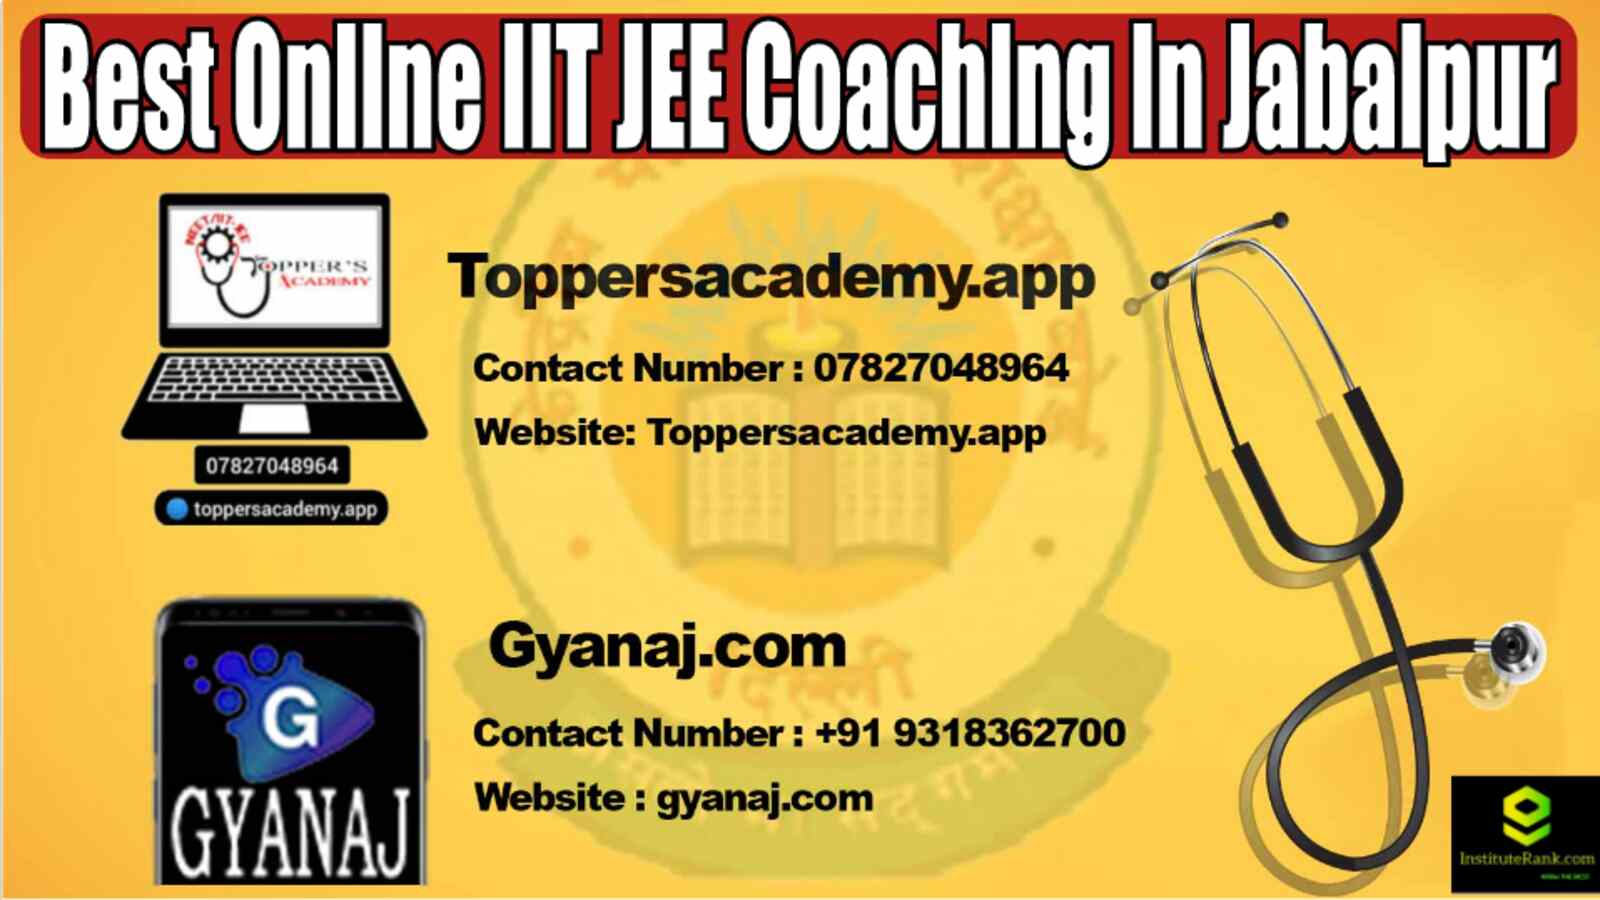 Best Online IIT JEE Coaching in Jabalpur 2022